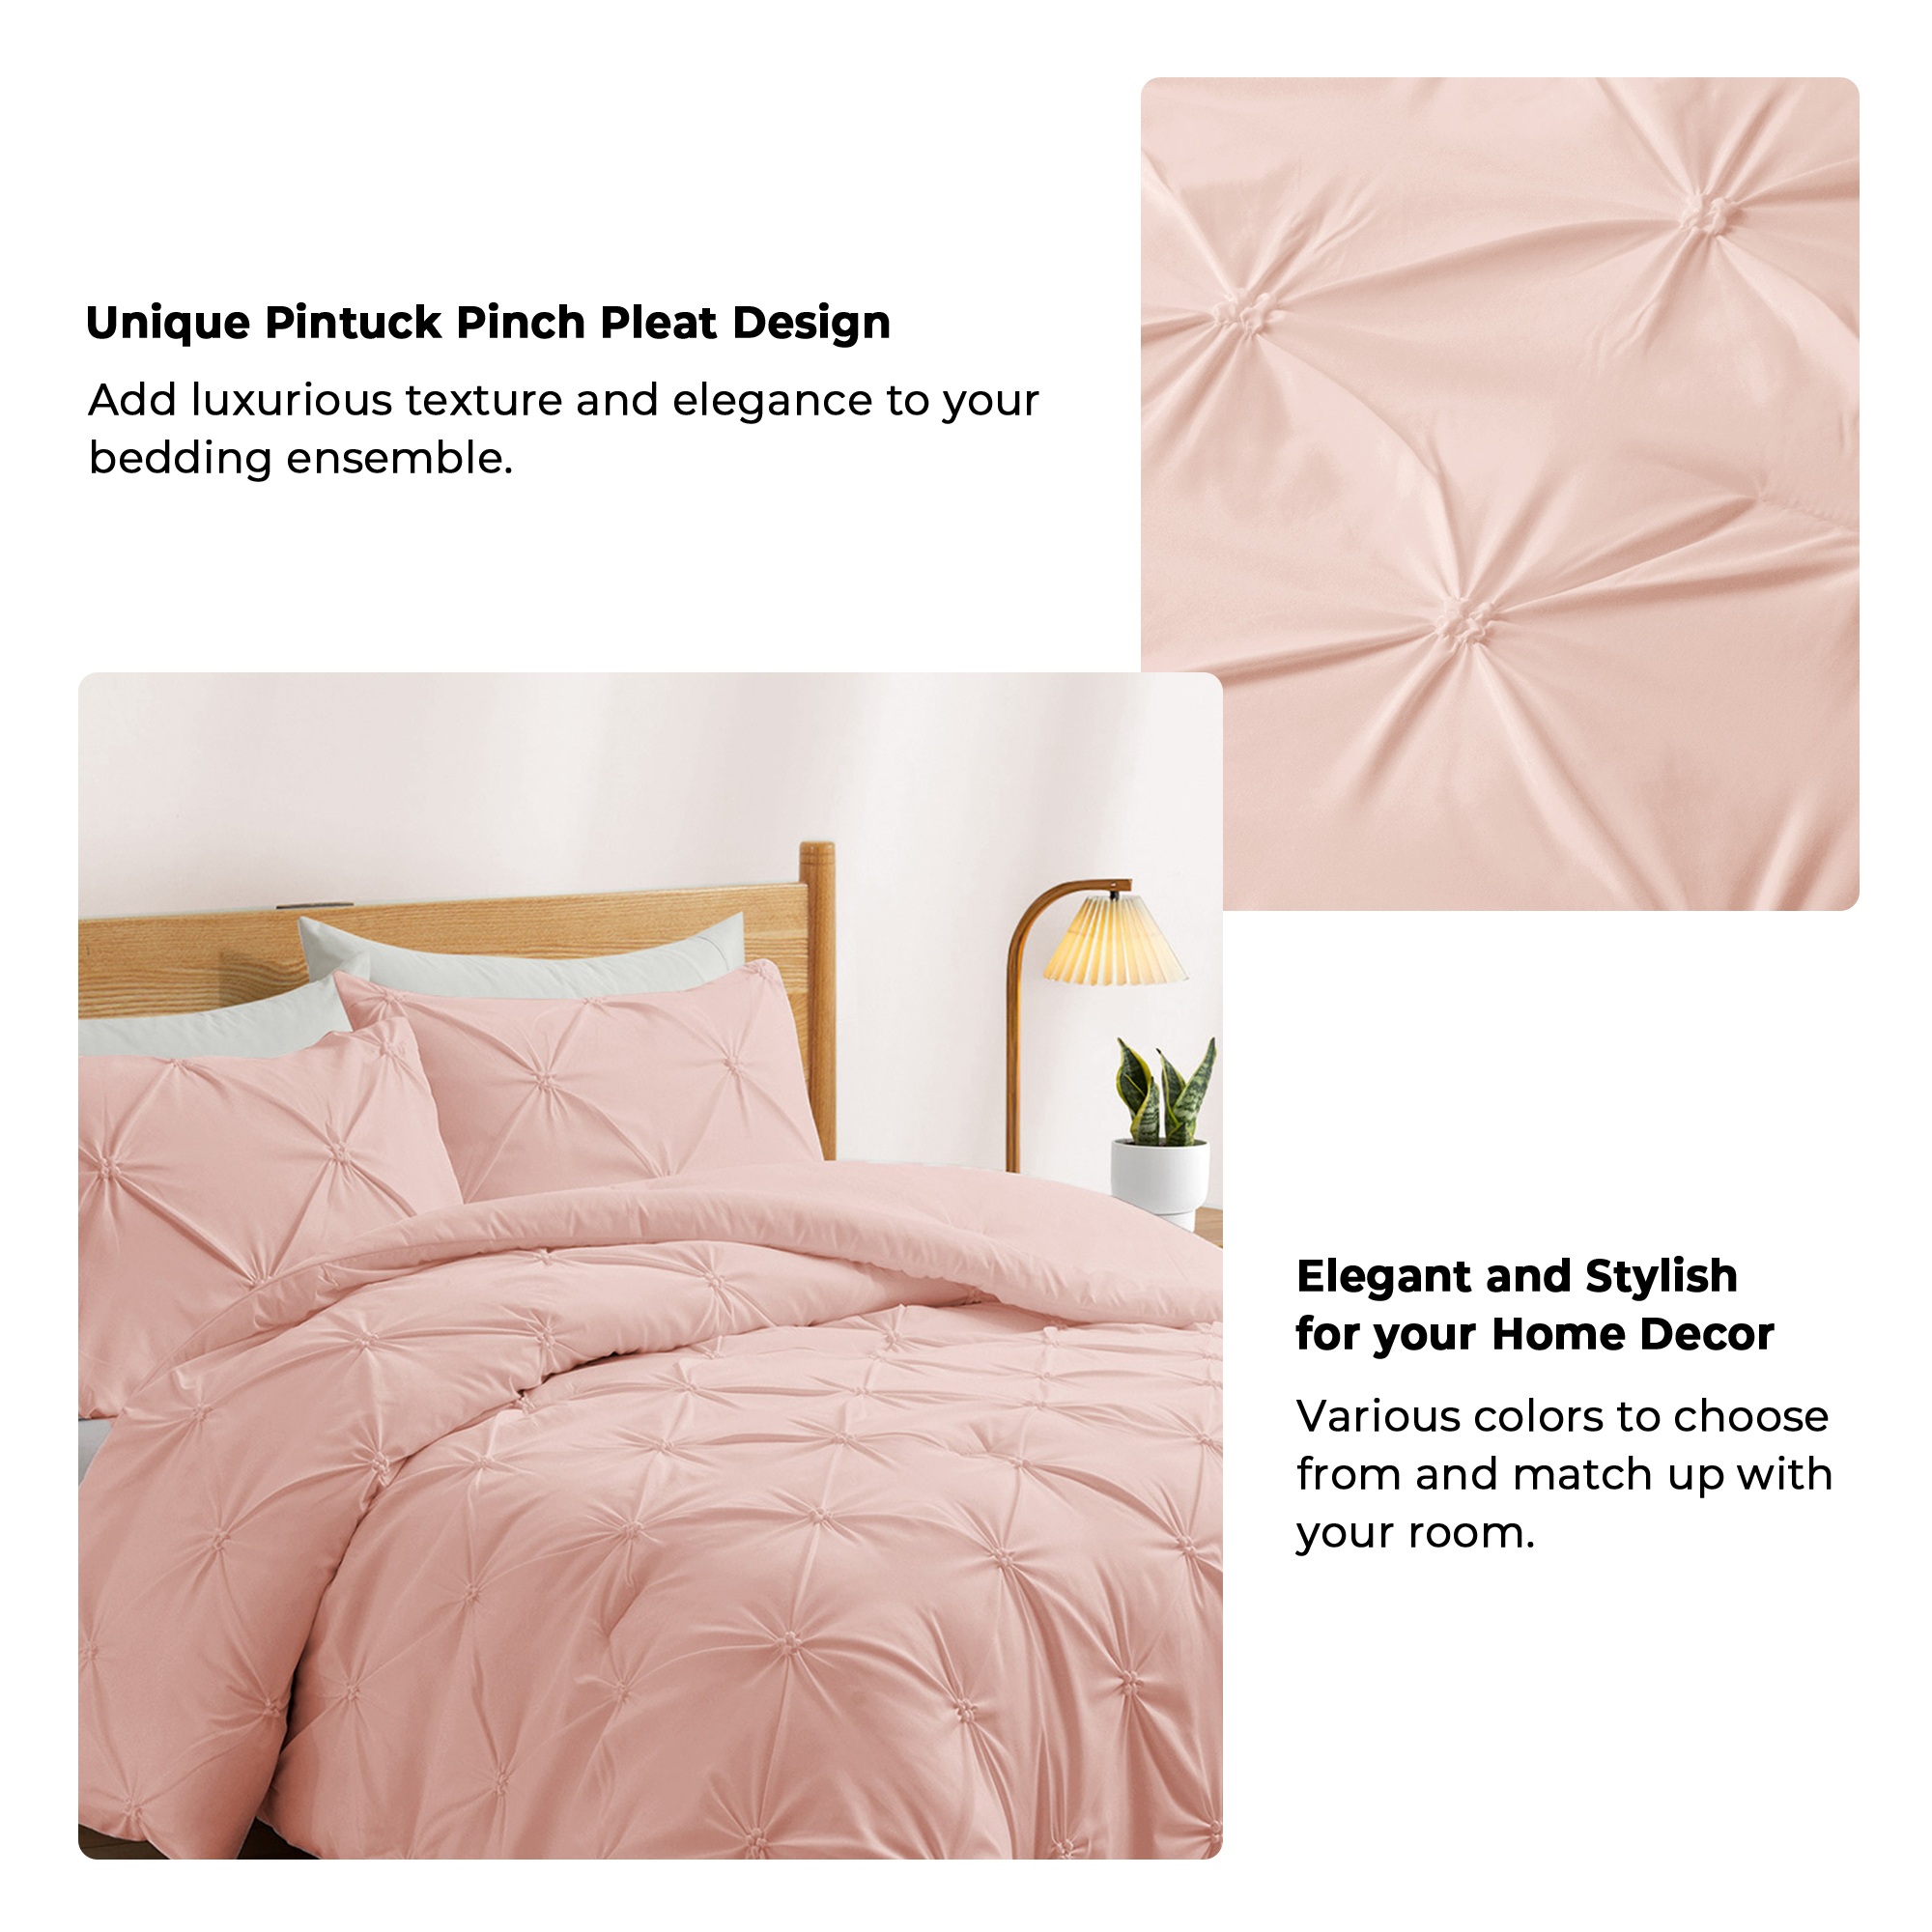 3 Piece Pinch Pleat Comforter Set With Sham - Cream, Twin